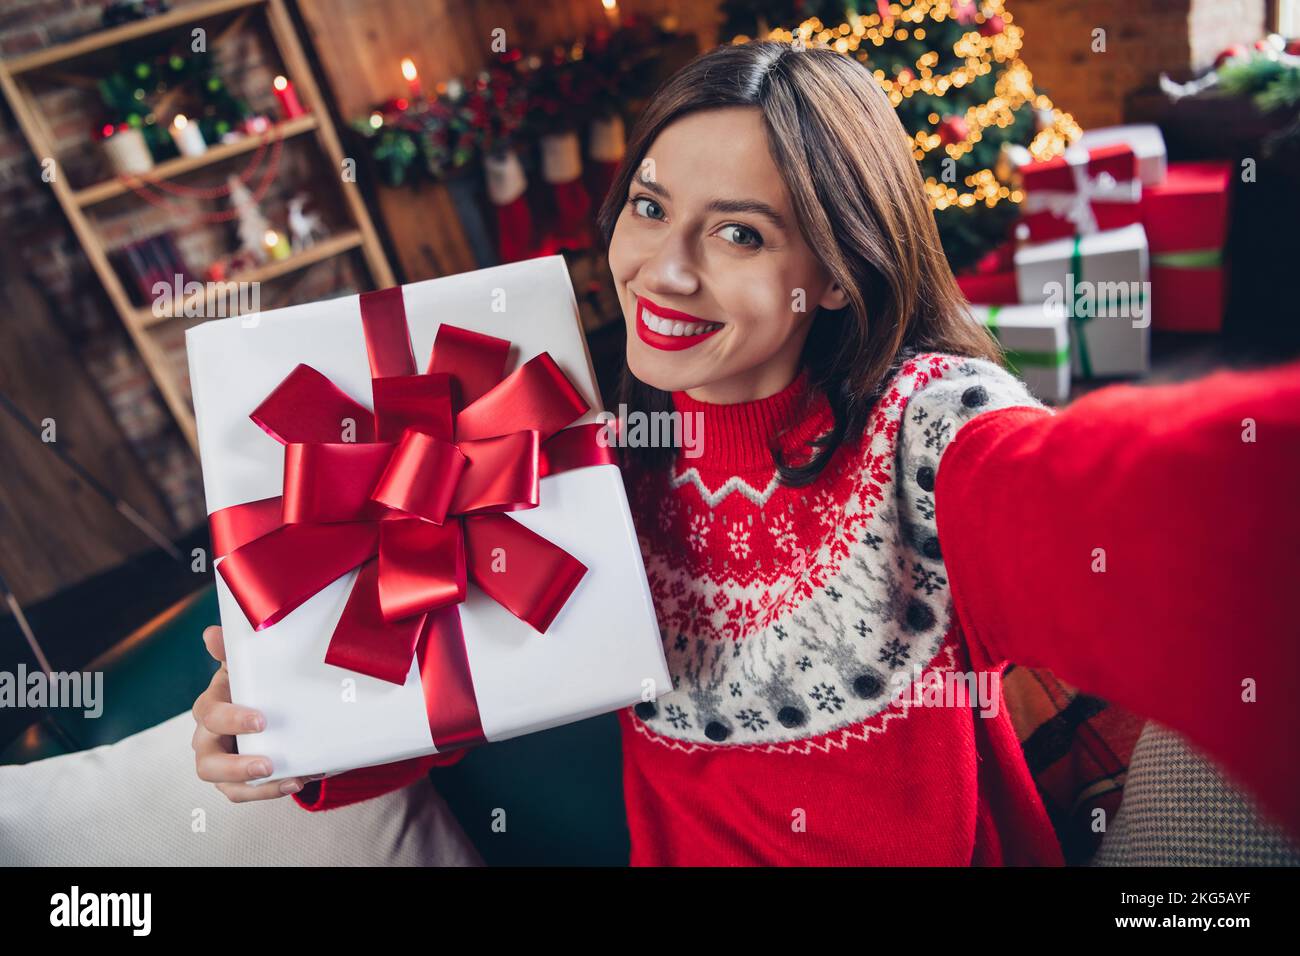 Selfie Porträtfoto von fröhlichem fröhlichem Mädchen, das sie mit dem neuen weihnachtsmann erschießt weihnachtsbaum hinter dem weihnachtsmann trägt einen hässlichen roten Pullover drinnen Stockfoto